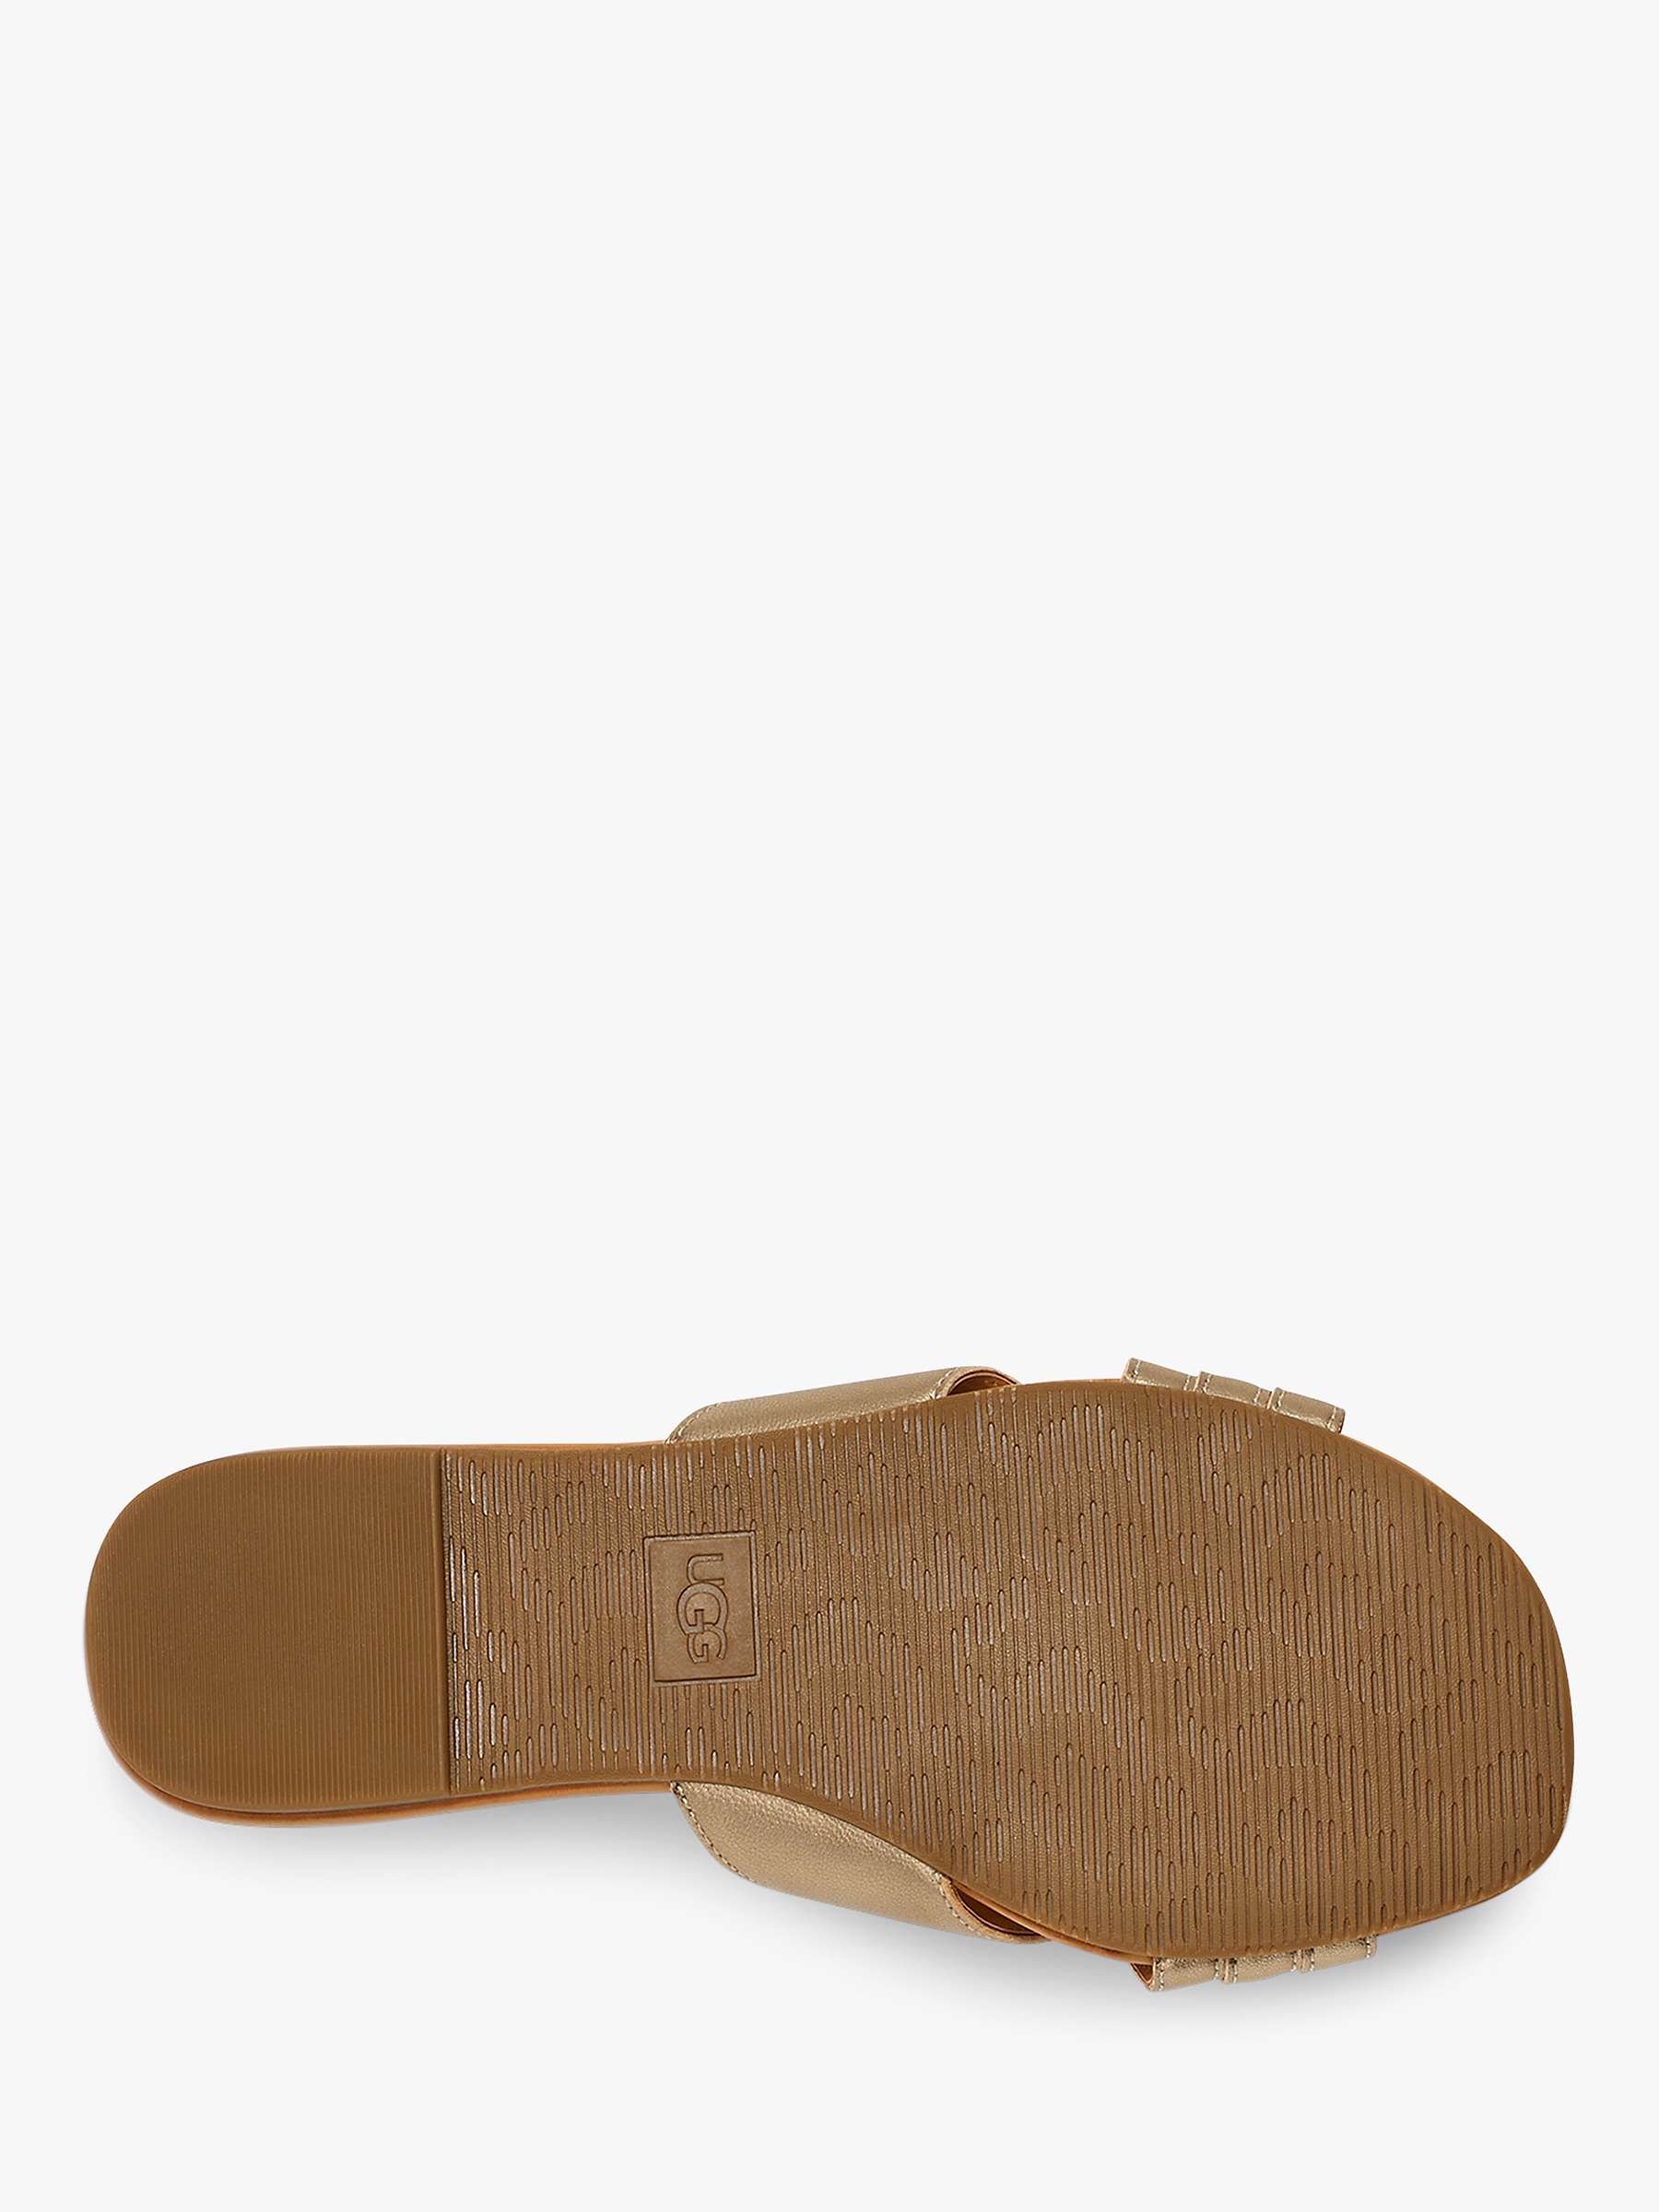 Buy UGG Kenleigh Slider Sandals Online at johnlewis.com